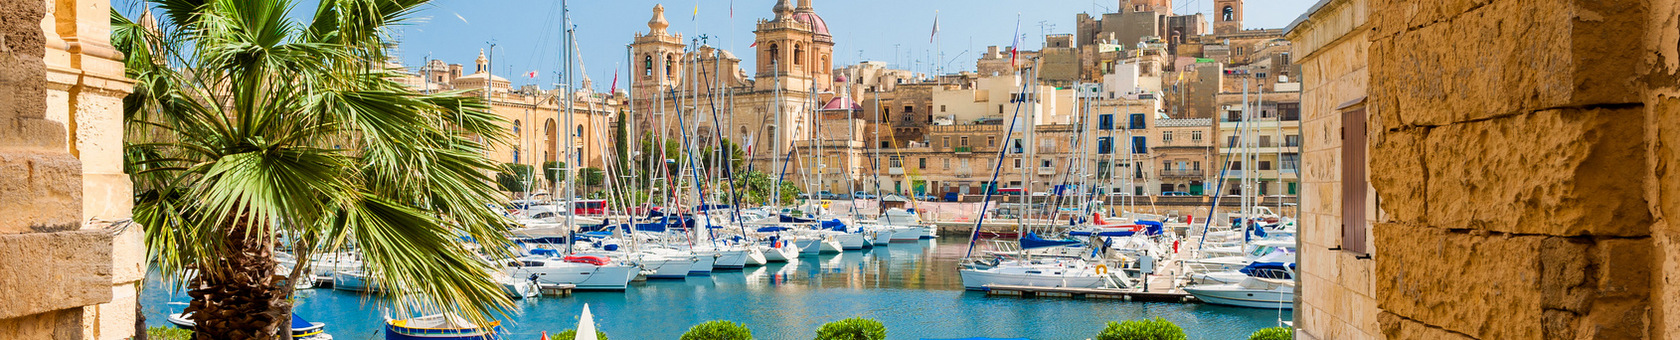 poznawanie języka angielskiego na Malcie - St. Julians